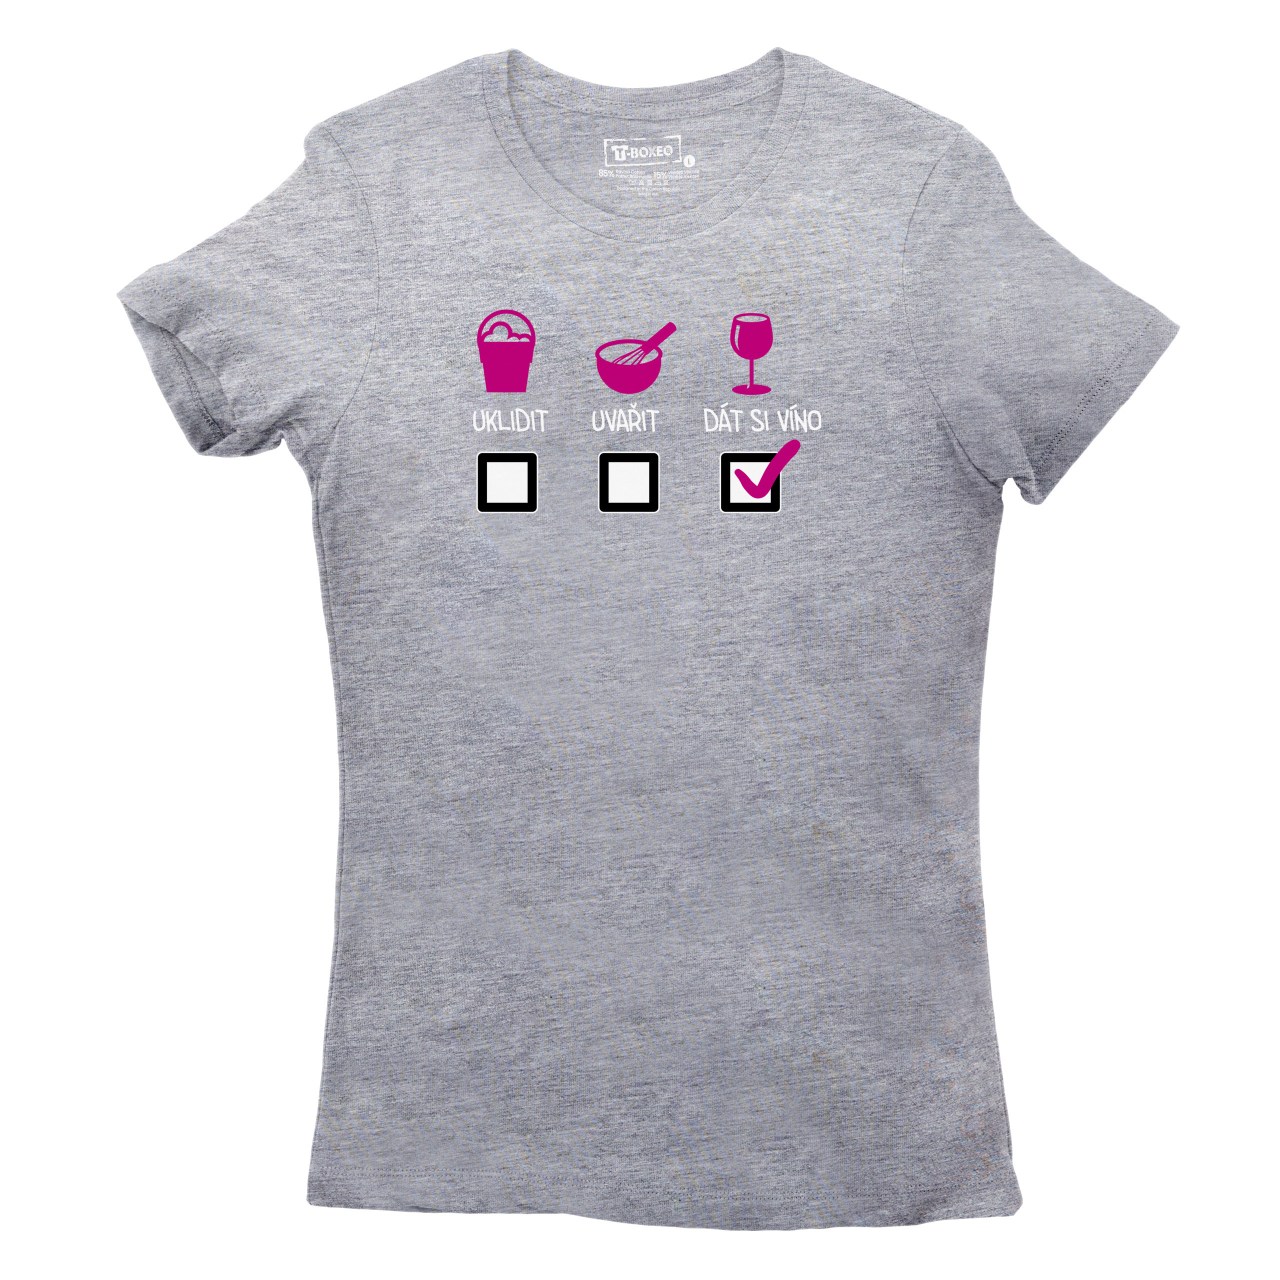 Dámské tričko s potiskem “Uklidit, uvařit, dát si víno”